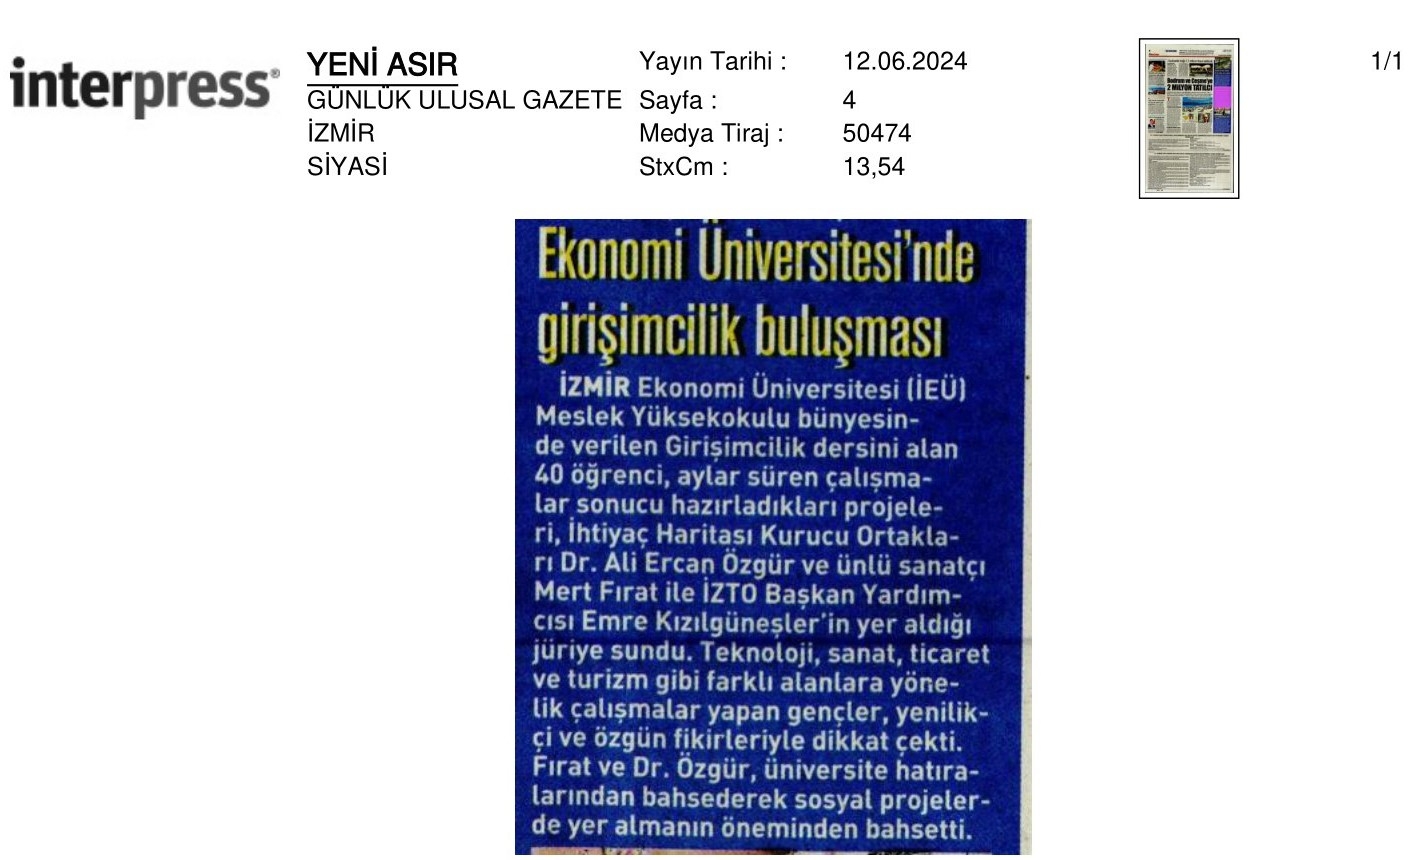 İzmir Ekonomi’de ‘Girişimcilik’ Buluşması